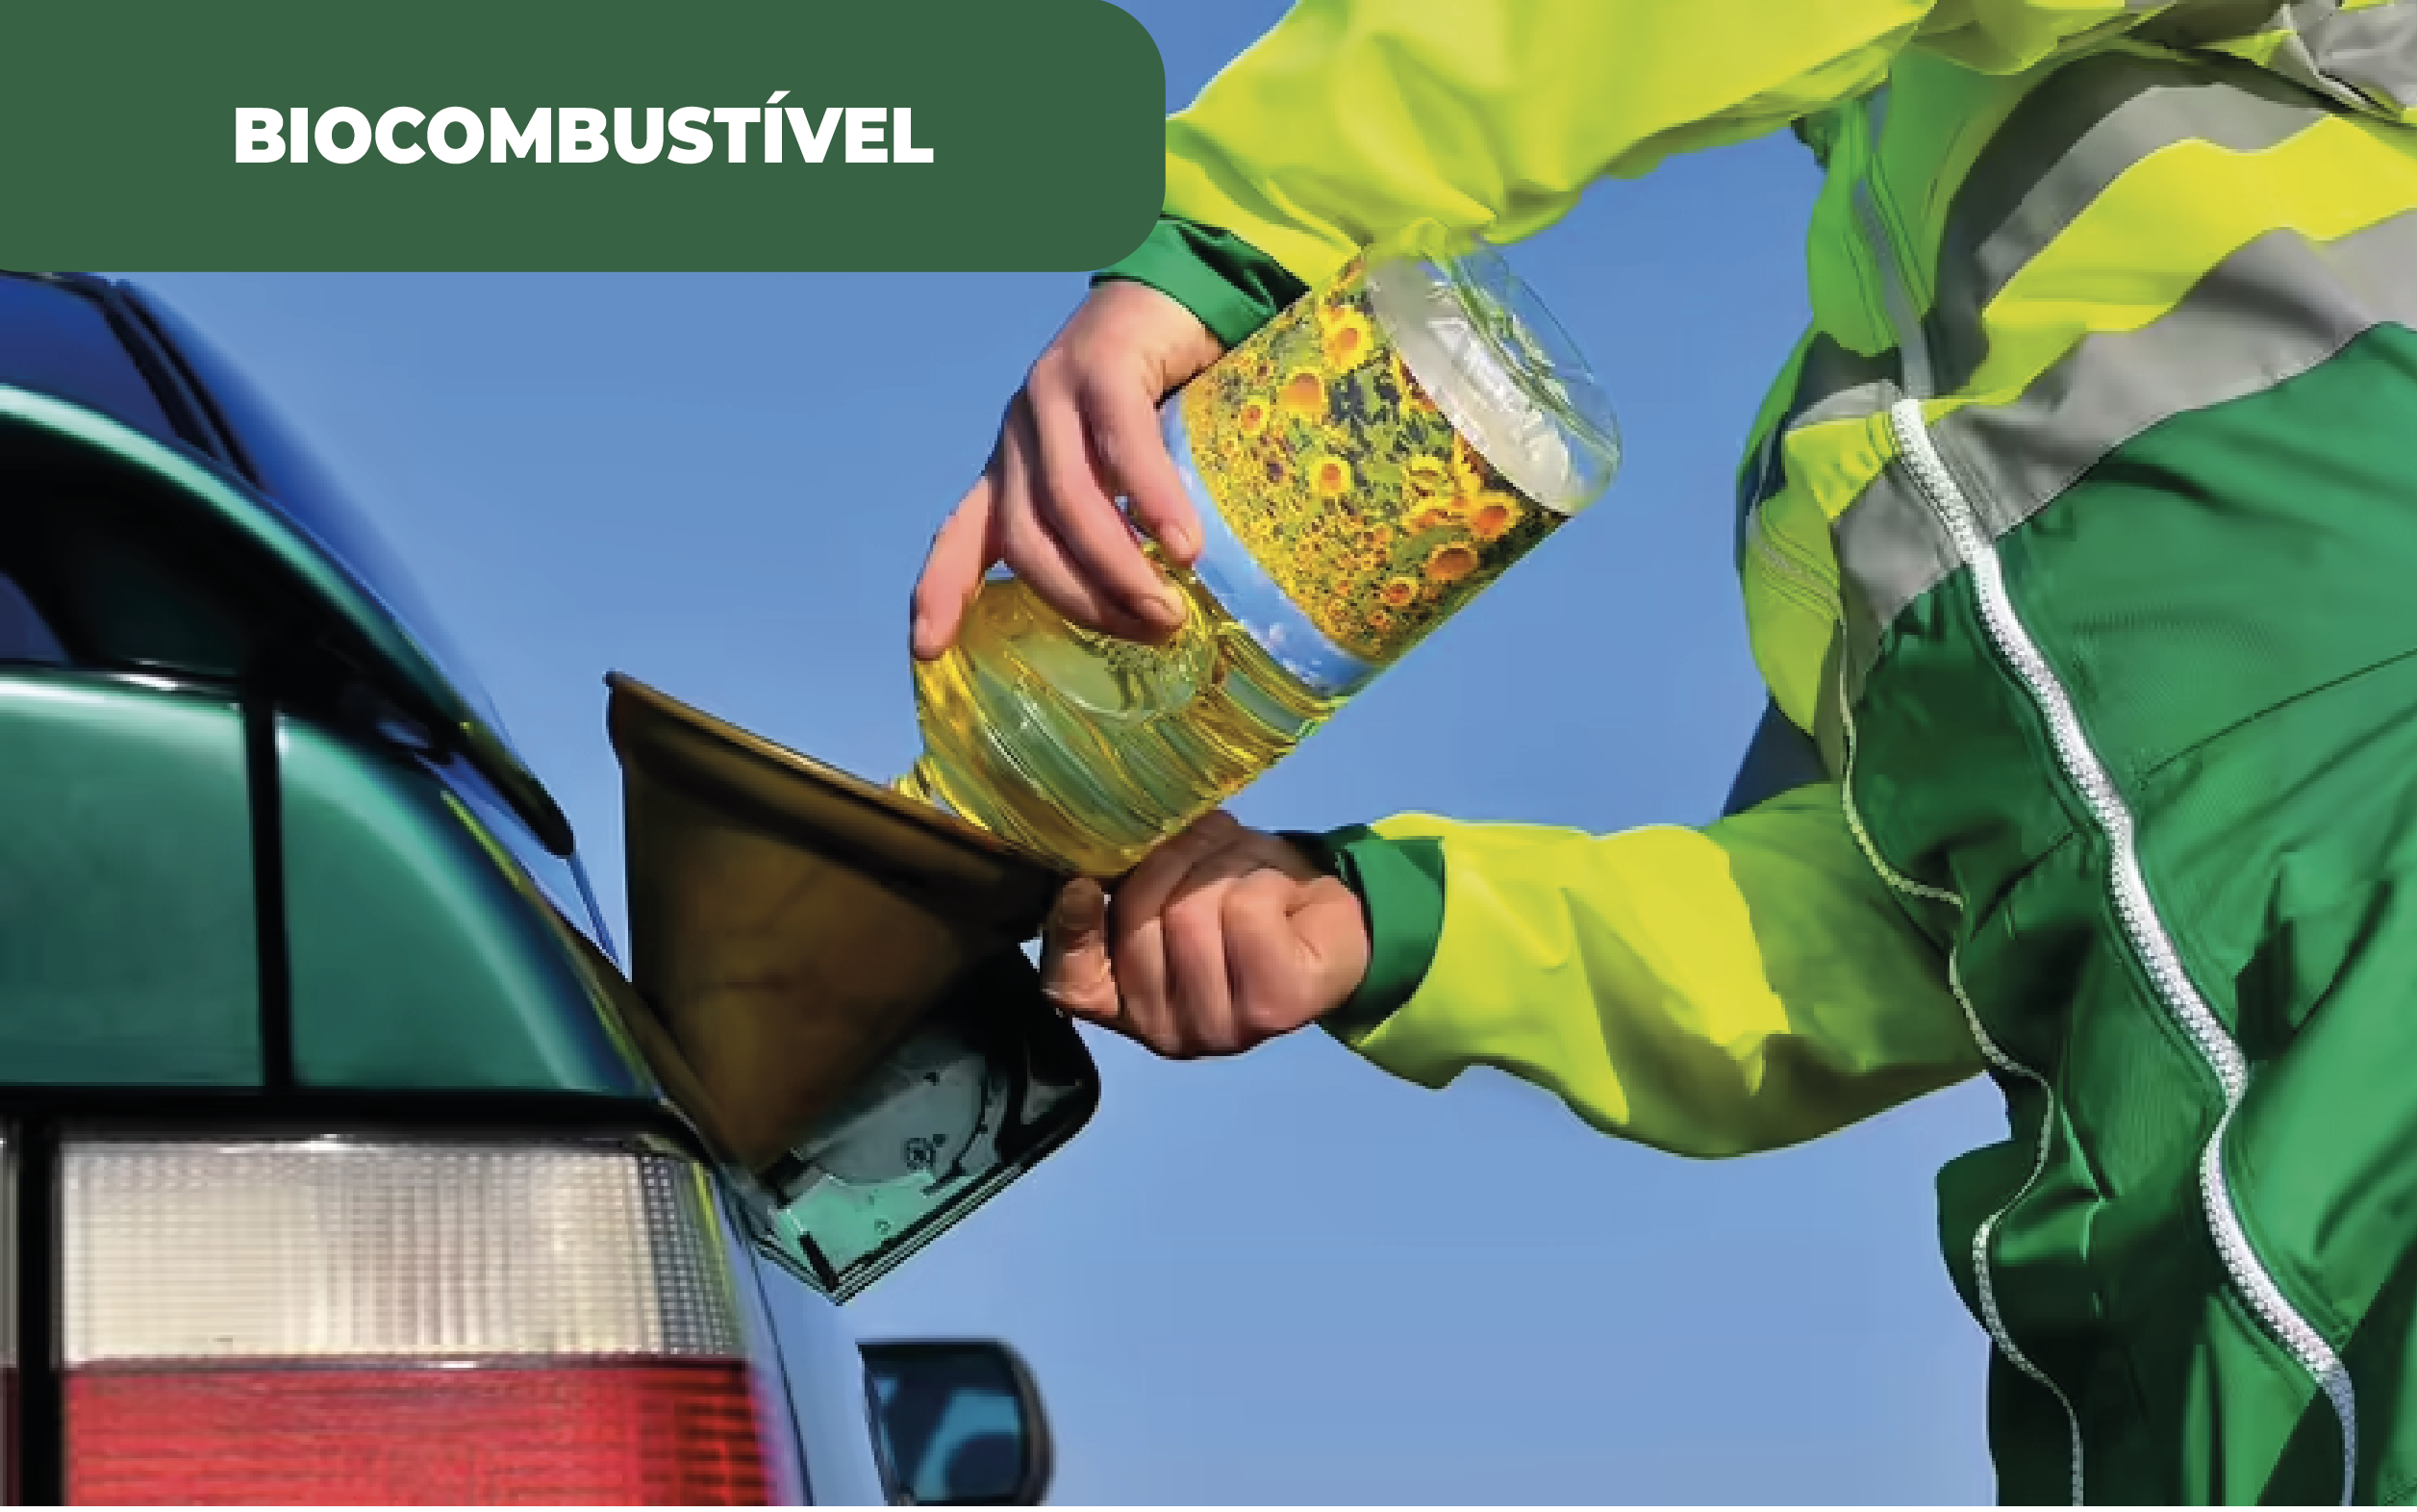 Imagem colorida de um homem, com macacão amarelo e verde, abastecendo com óleo vegetal, através de funil, o depósito de veículo automóvel. Na Alemanha, os óleos alimentares usados no depósito, são uma nova aposta para a redução de emissões.